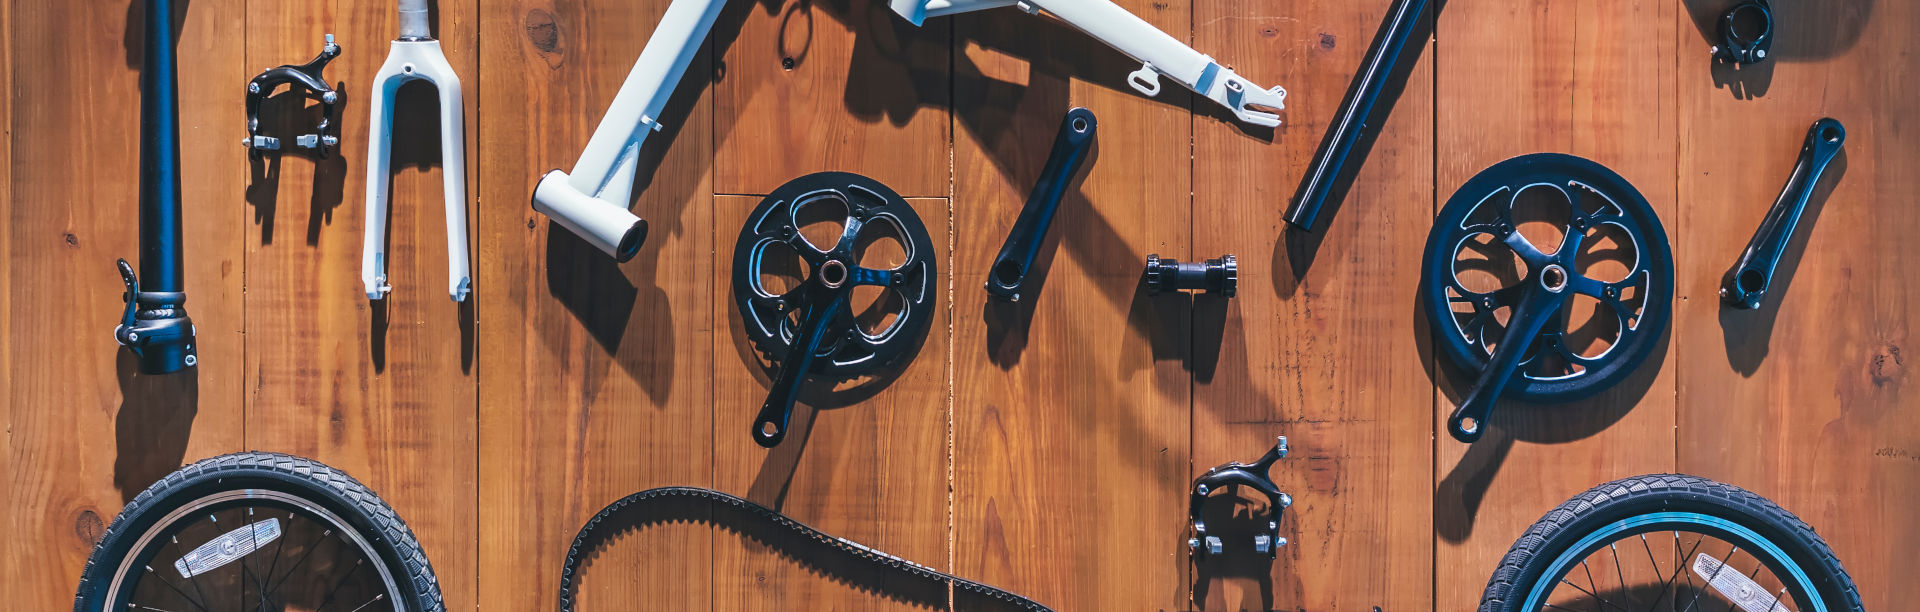 Fahrrad Ratgeber - Teile und Komponenten